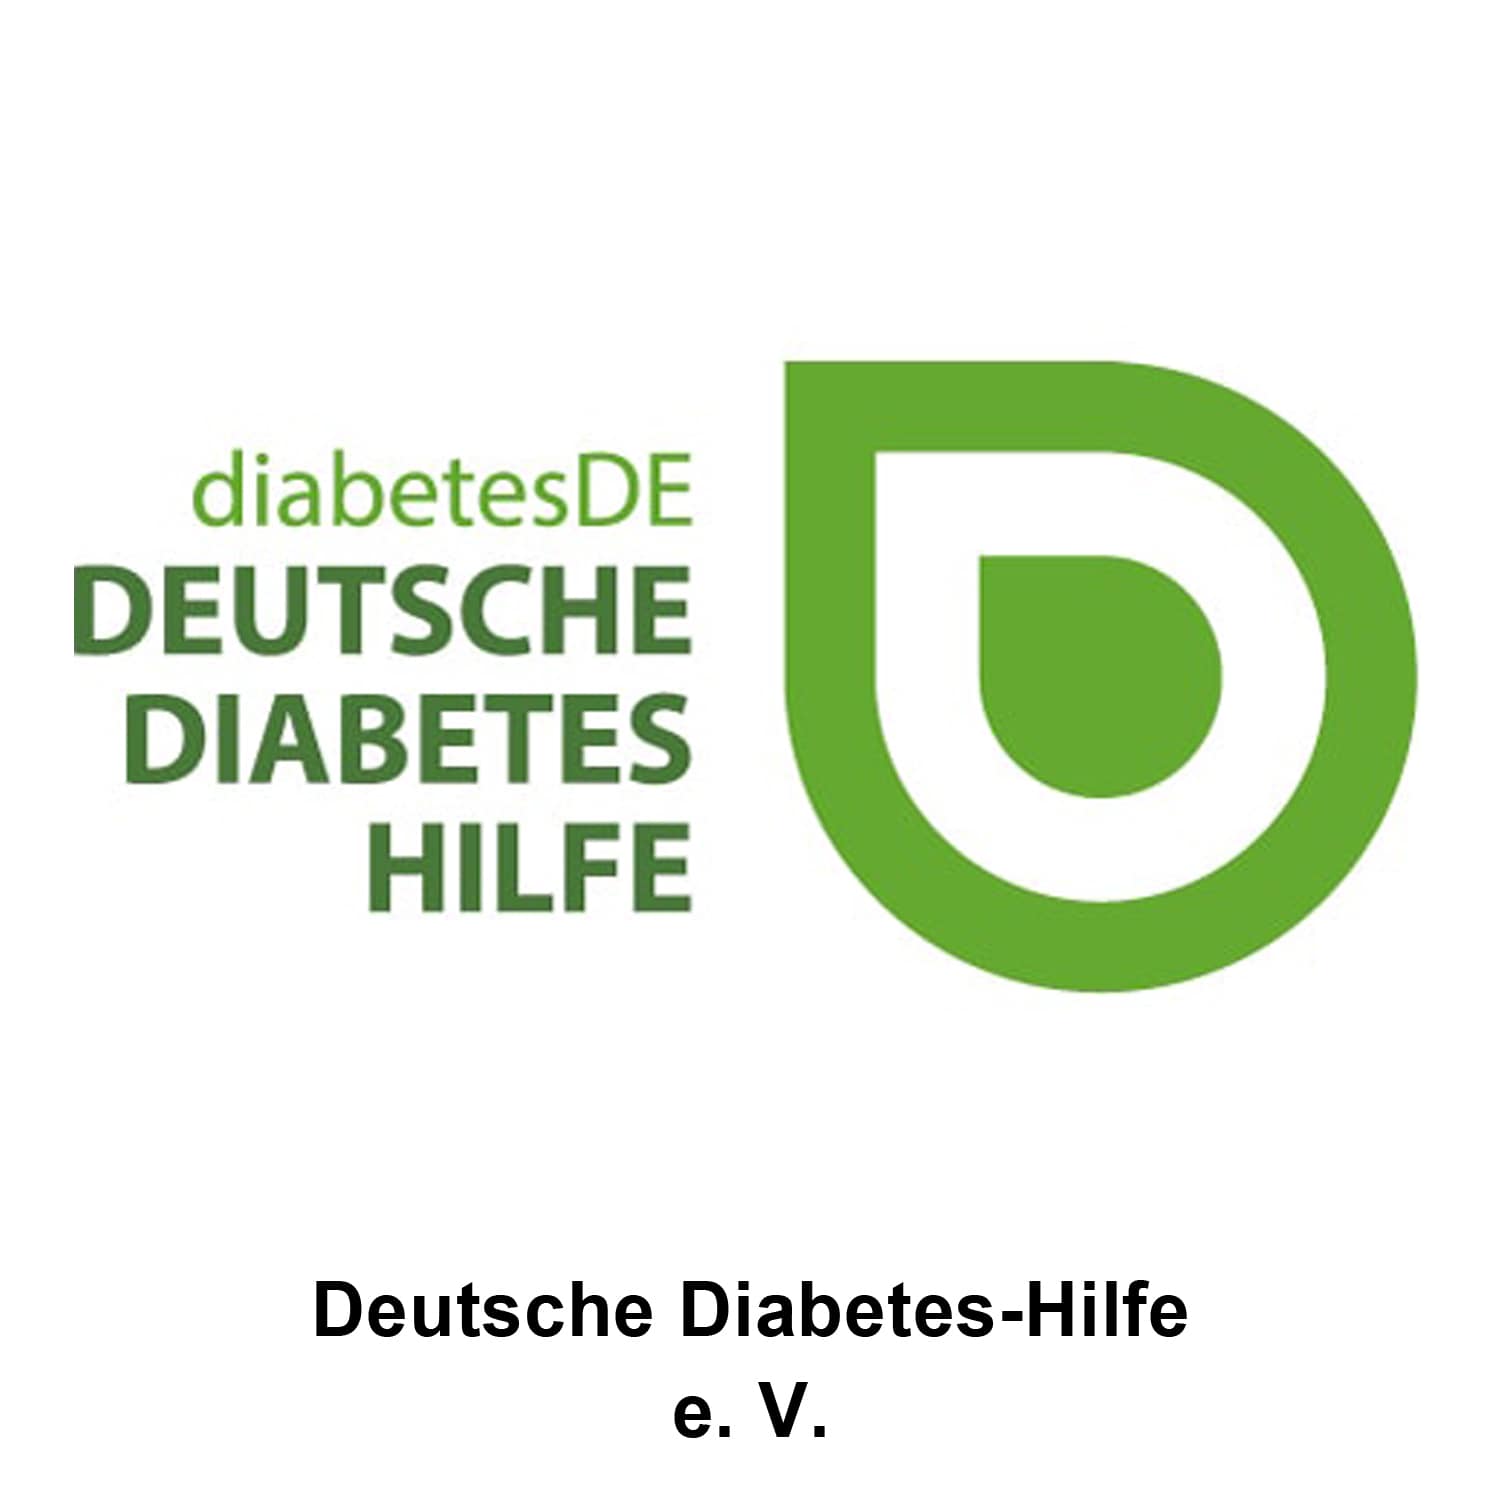 diabetesDE – Deutsche Diabetes-Hilfe e.V.